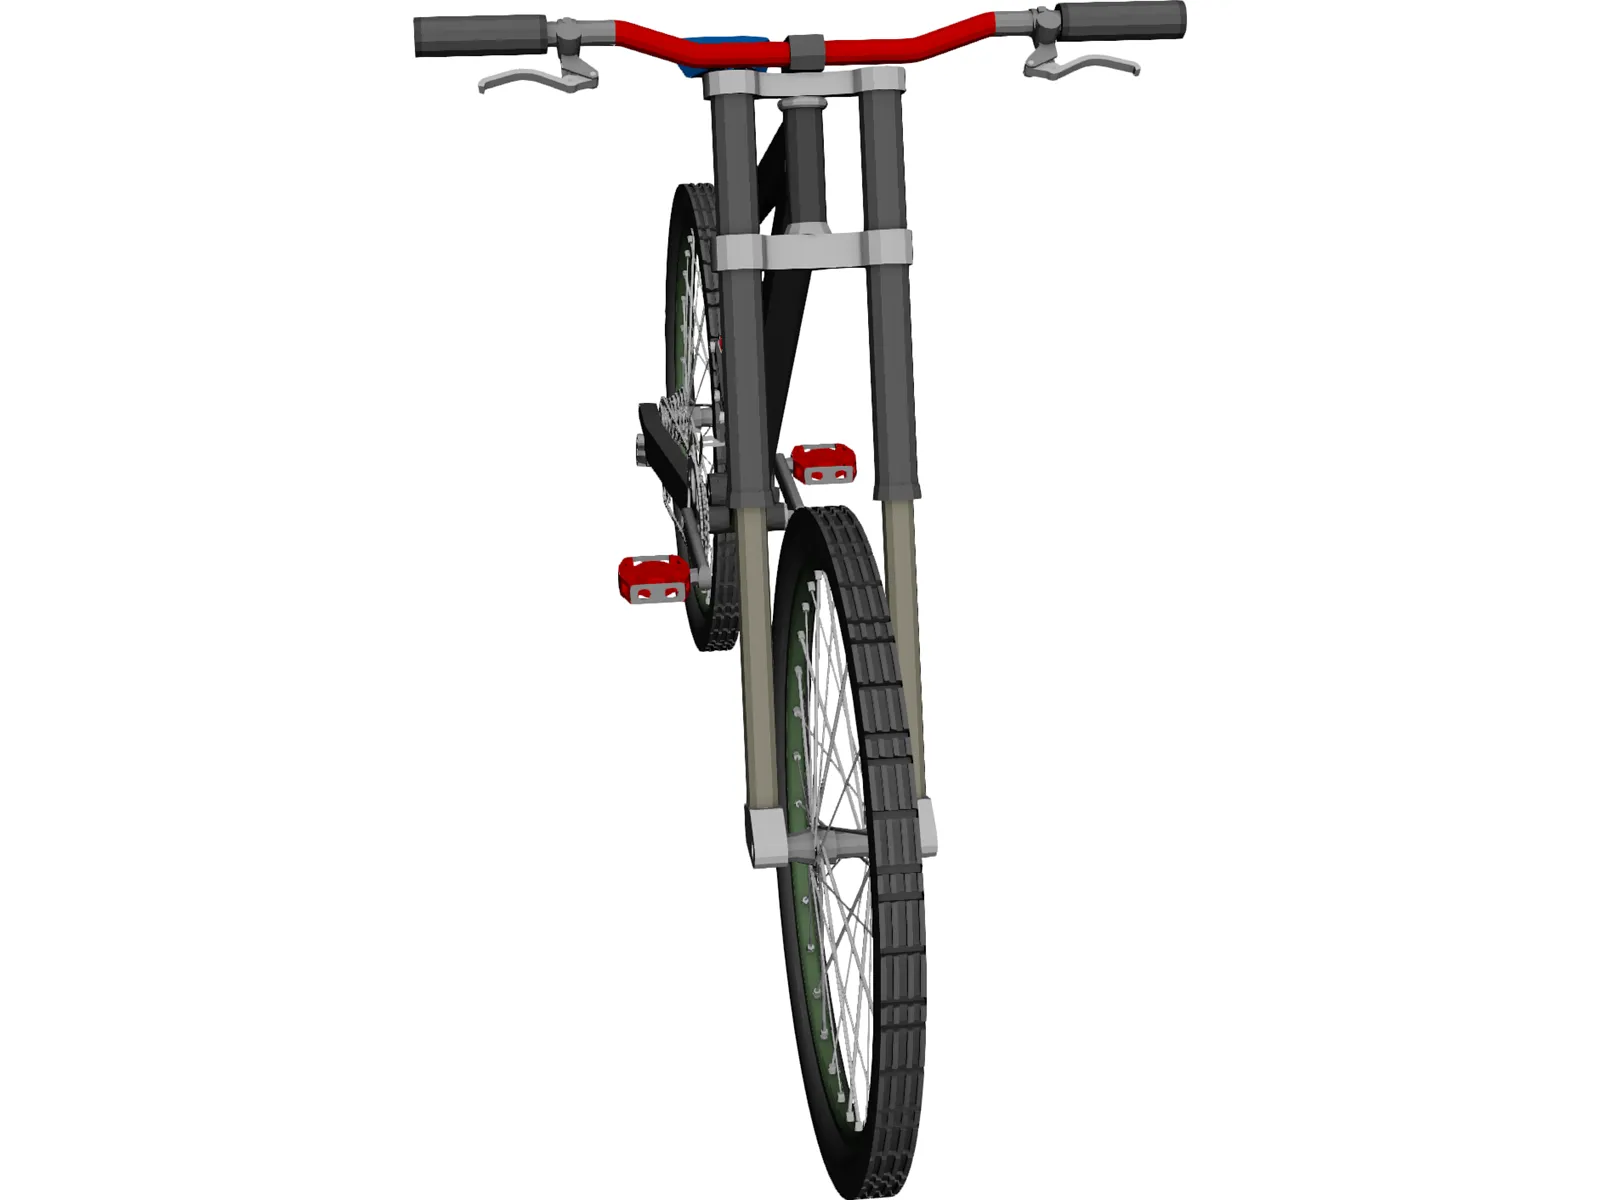 Bike Rocky Mountain RM7 3D Model